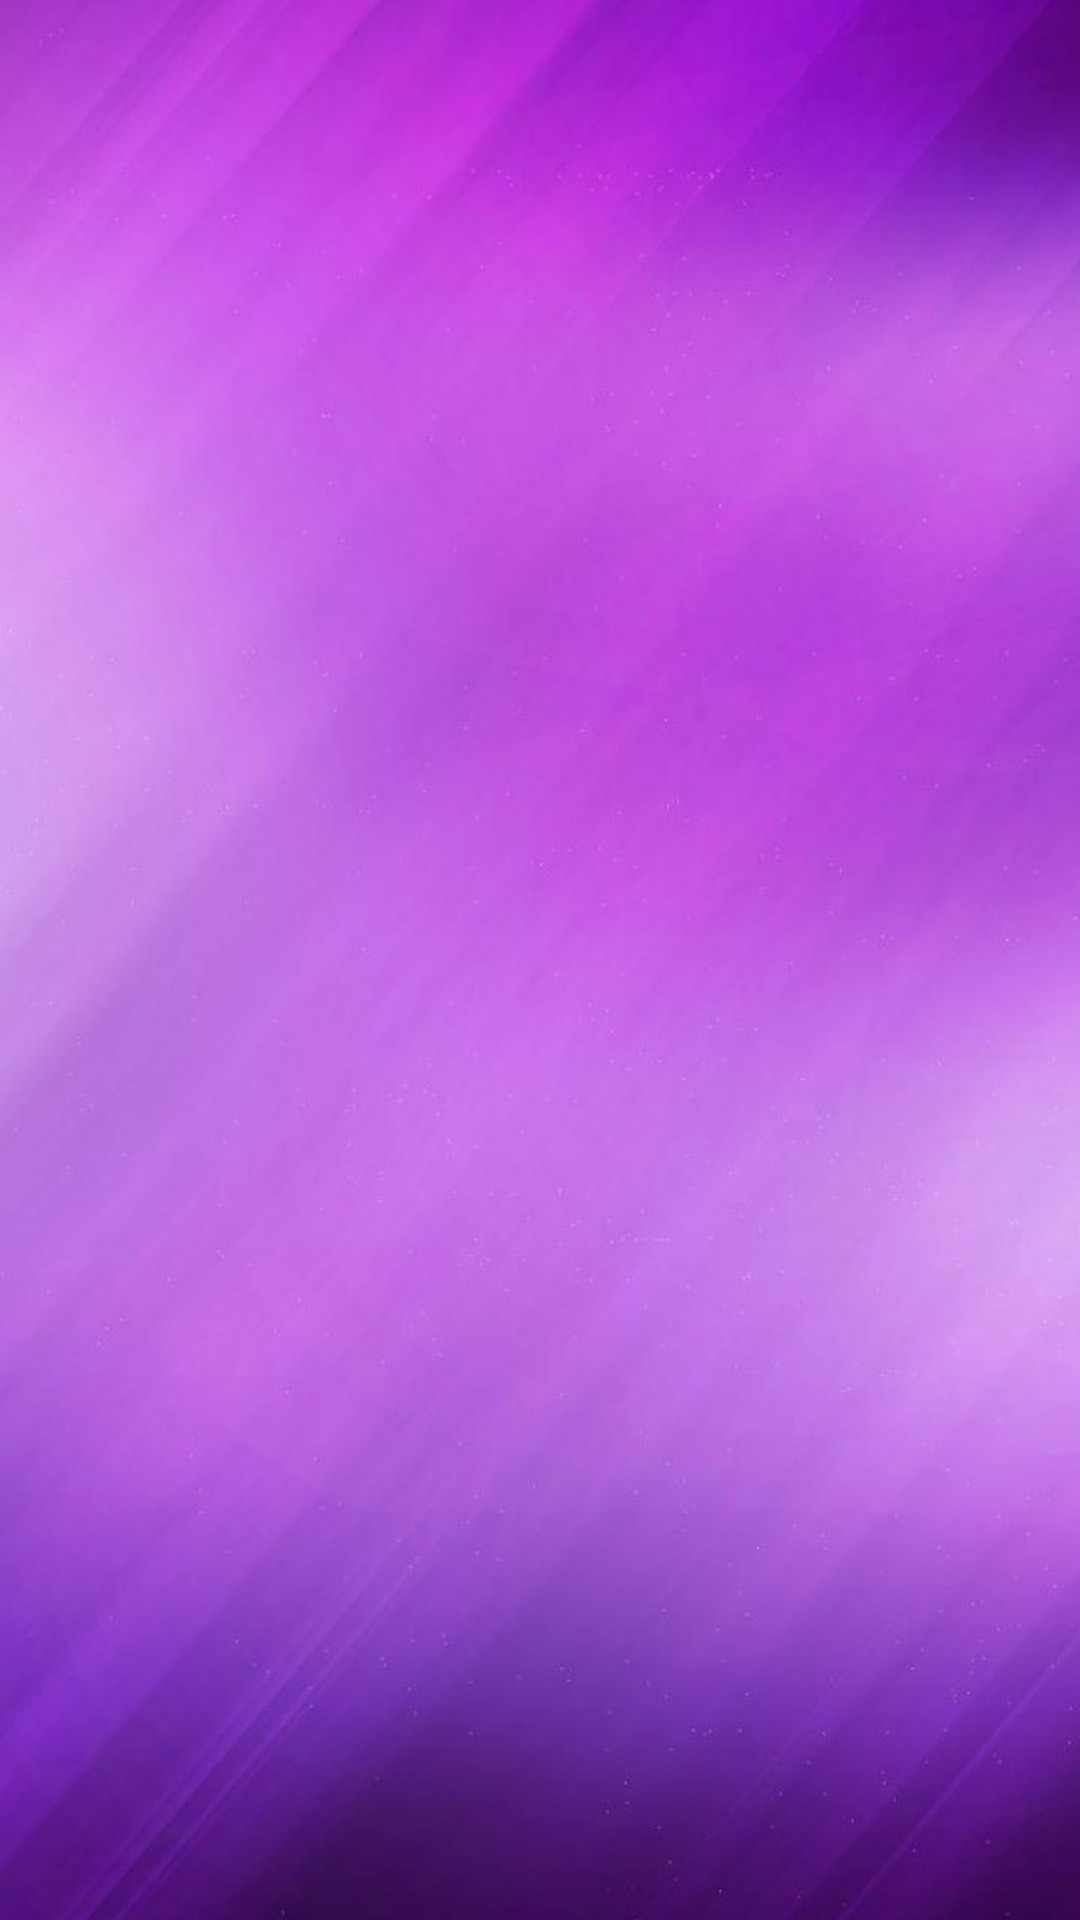 1080x1920 Simple Purple Nexus 5 Wallpapers Nexus 5 wallpapers and Backgrounds  